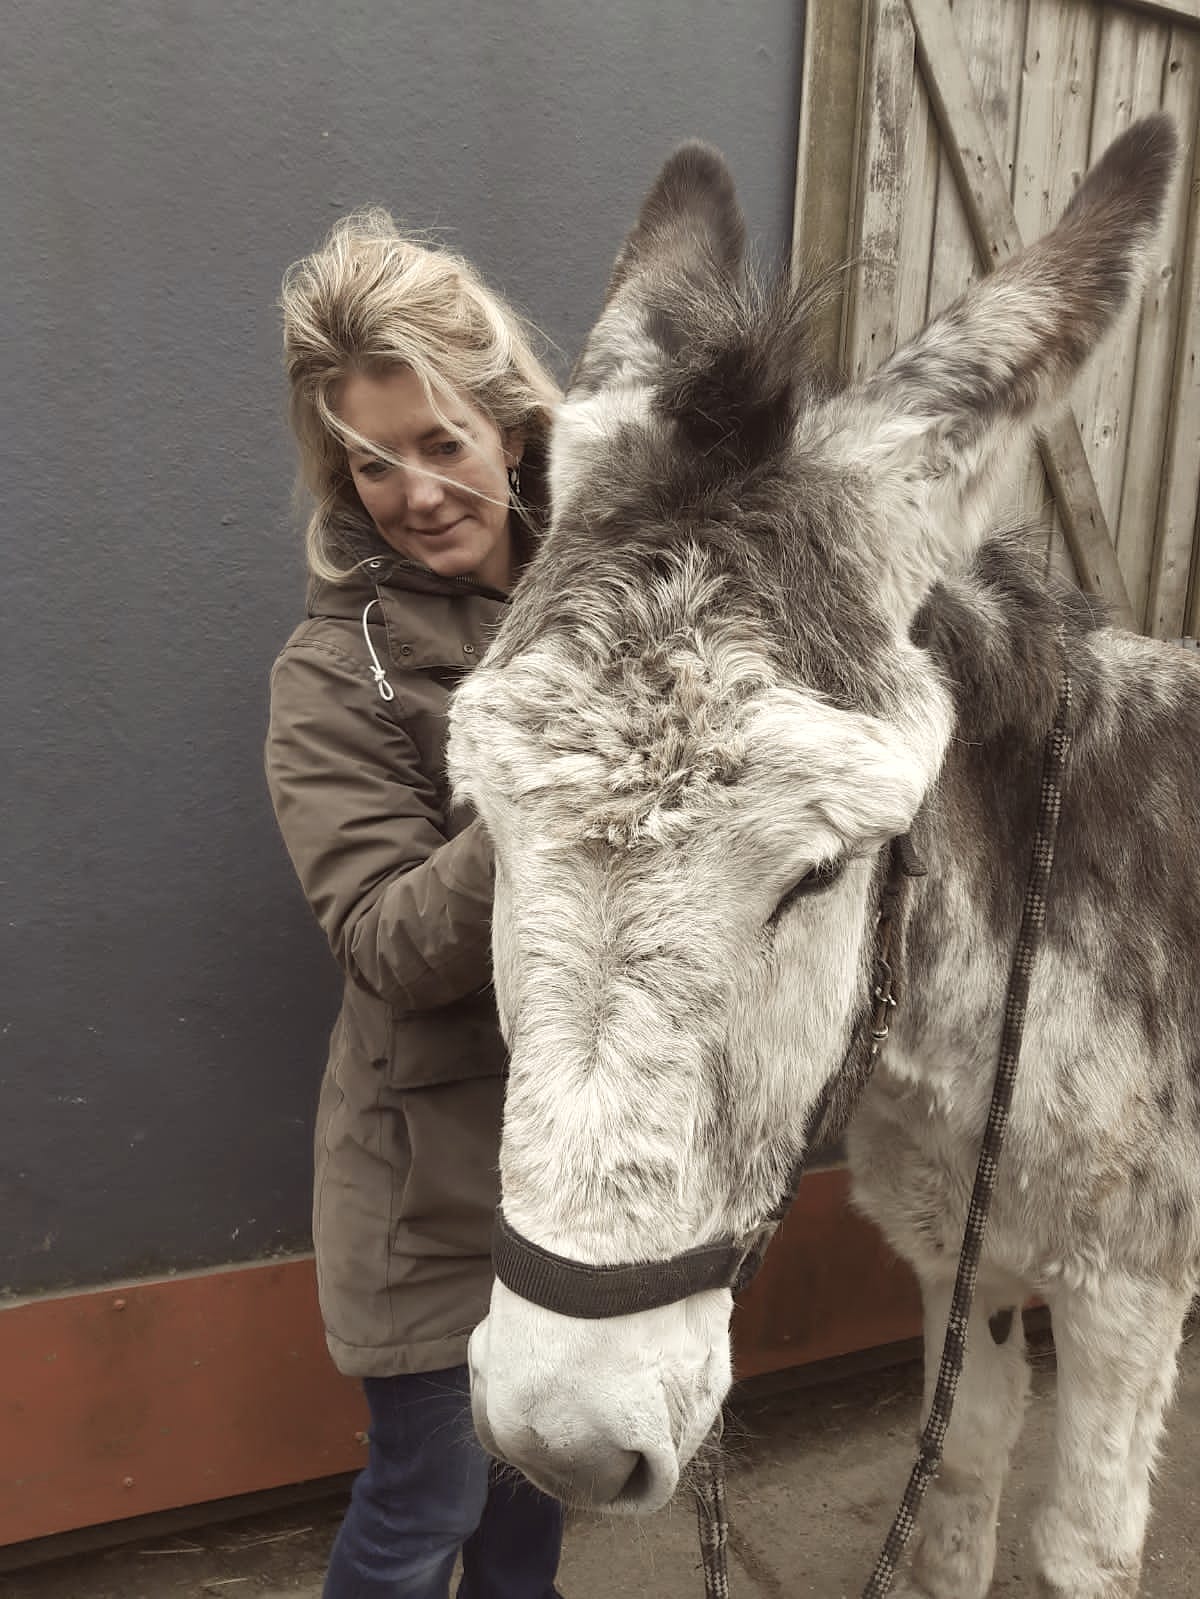 Margriet Lenting-Kroes holistisch therapeut voor paarden sinds 2009 